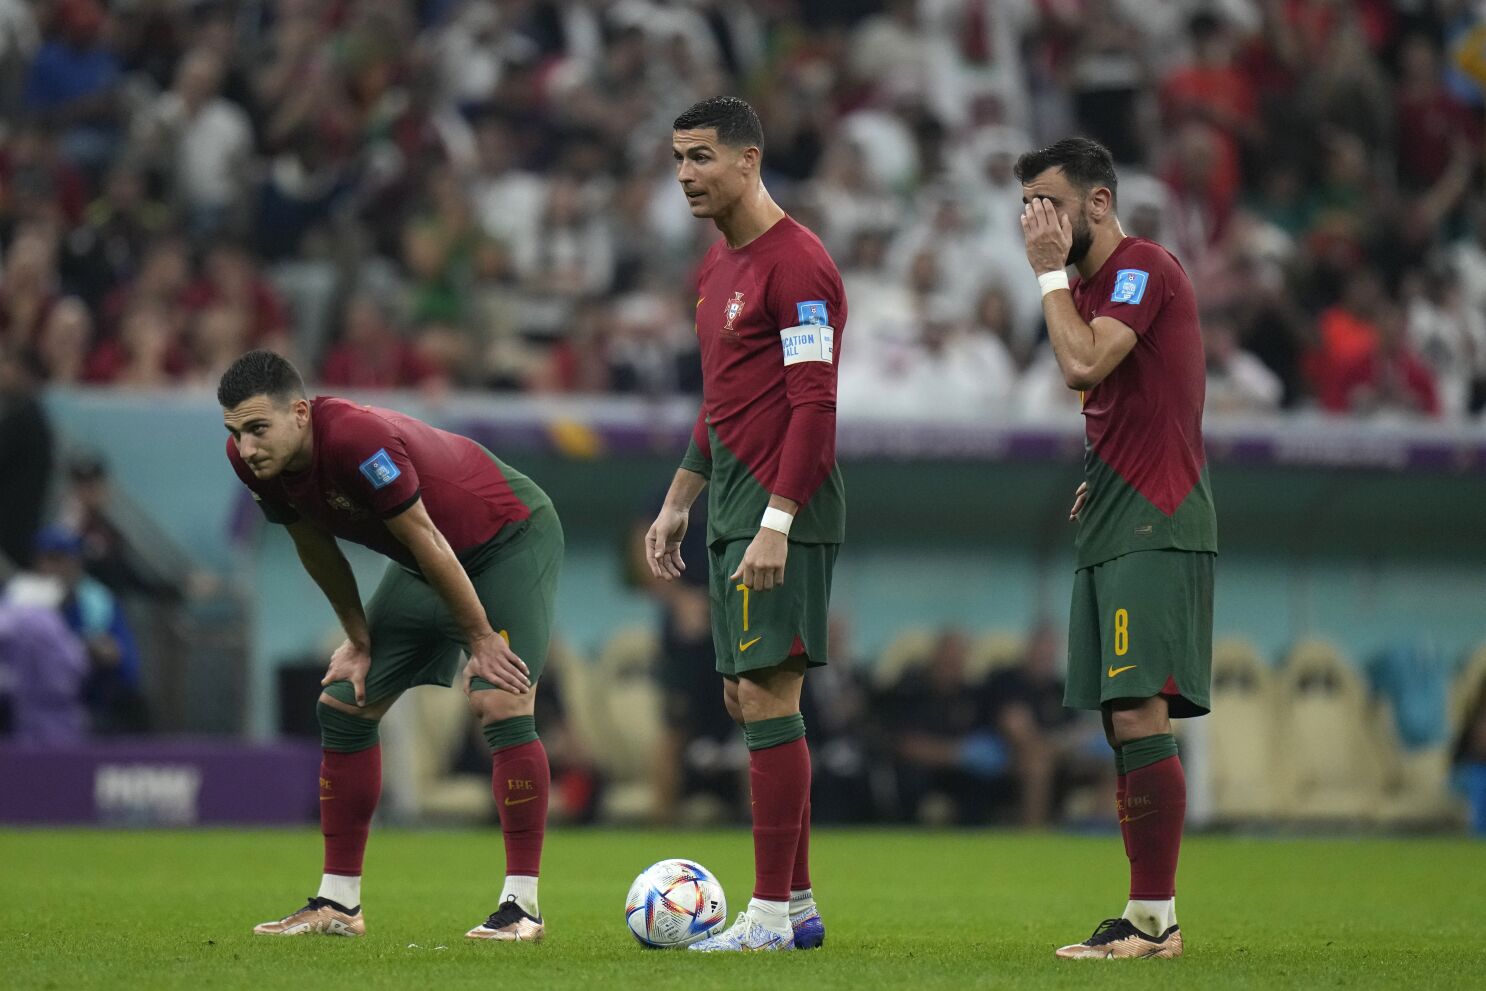 polla extremadamente País Portugal se libera de Cristiano Ronaldo en el Mundial - San Diego  Union-Tribune en Español